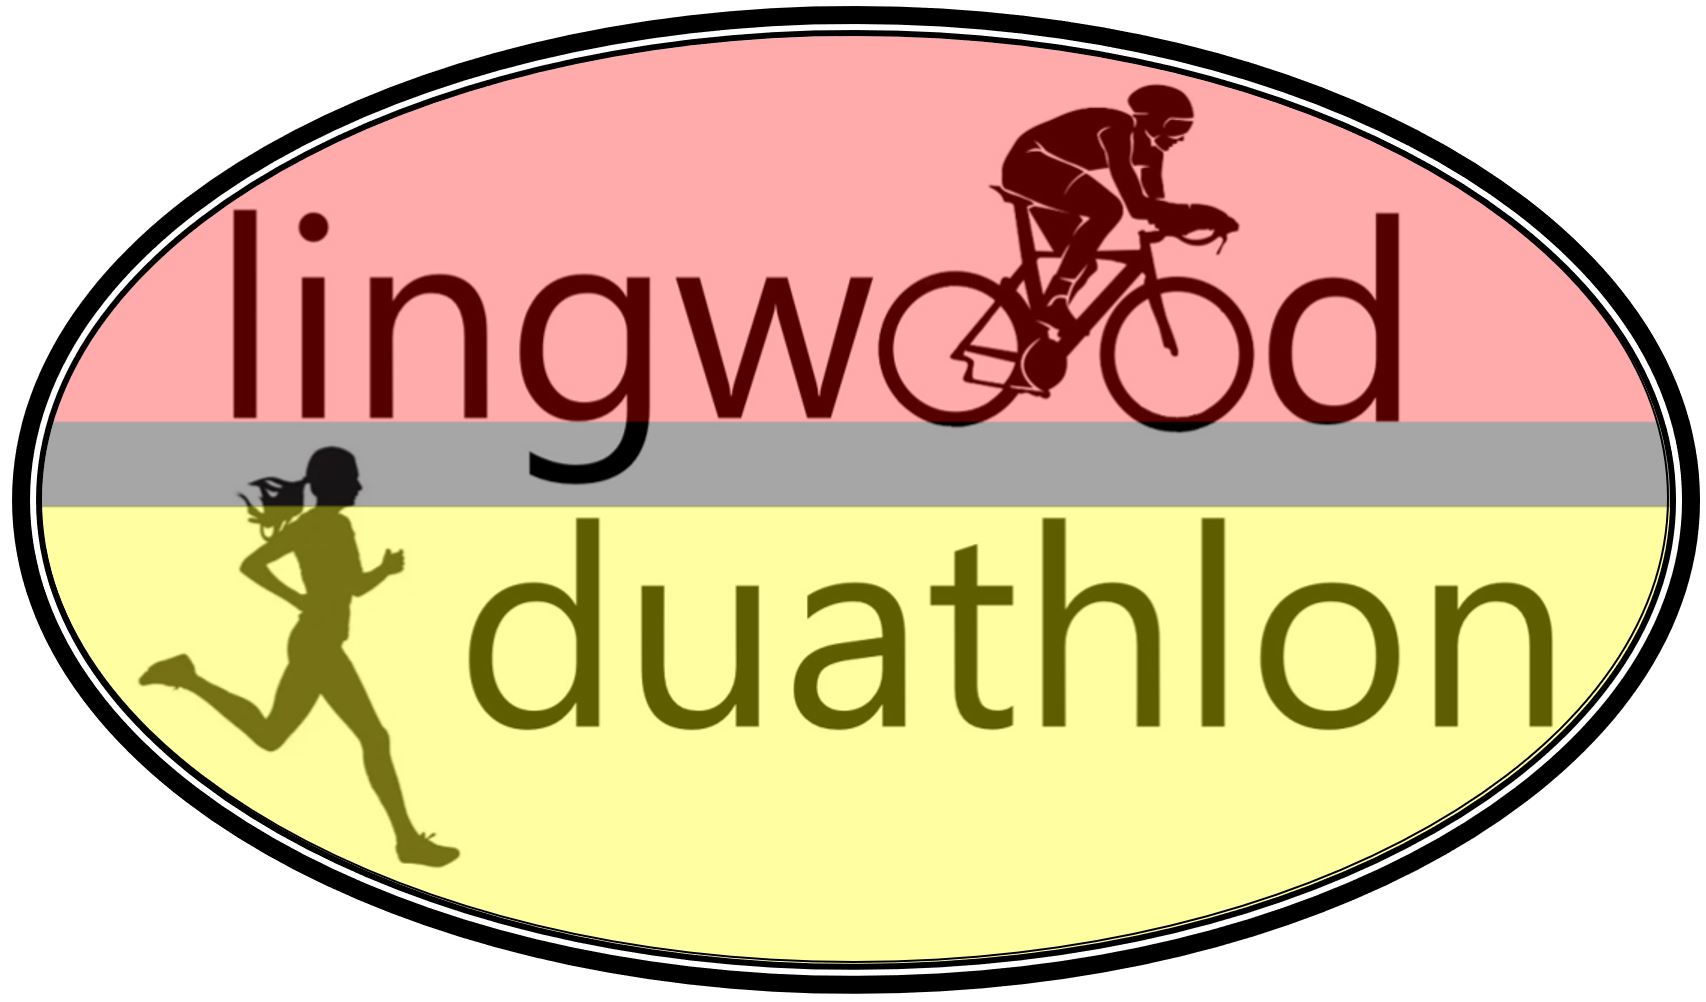 Lingwood Duathlon